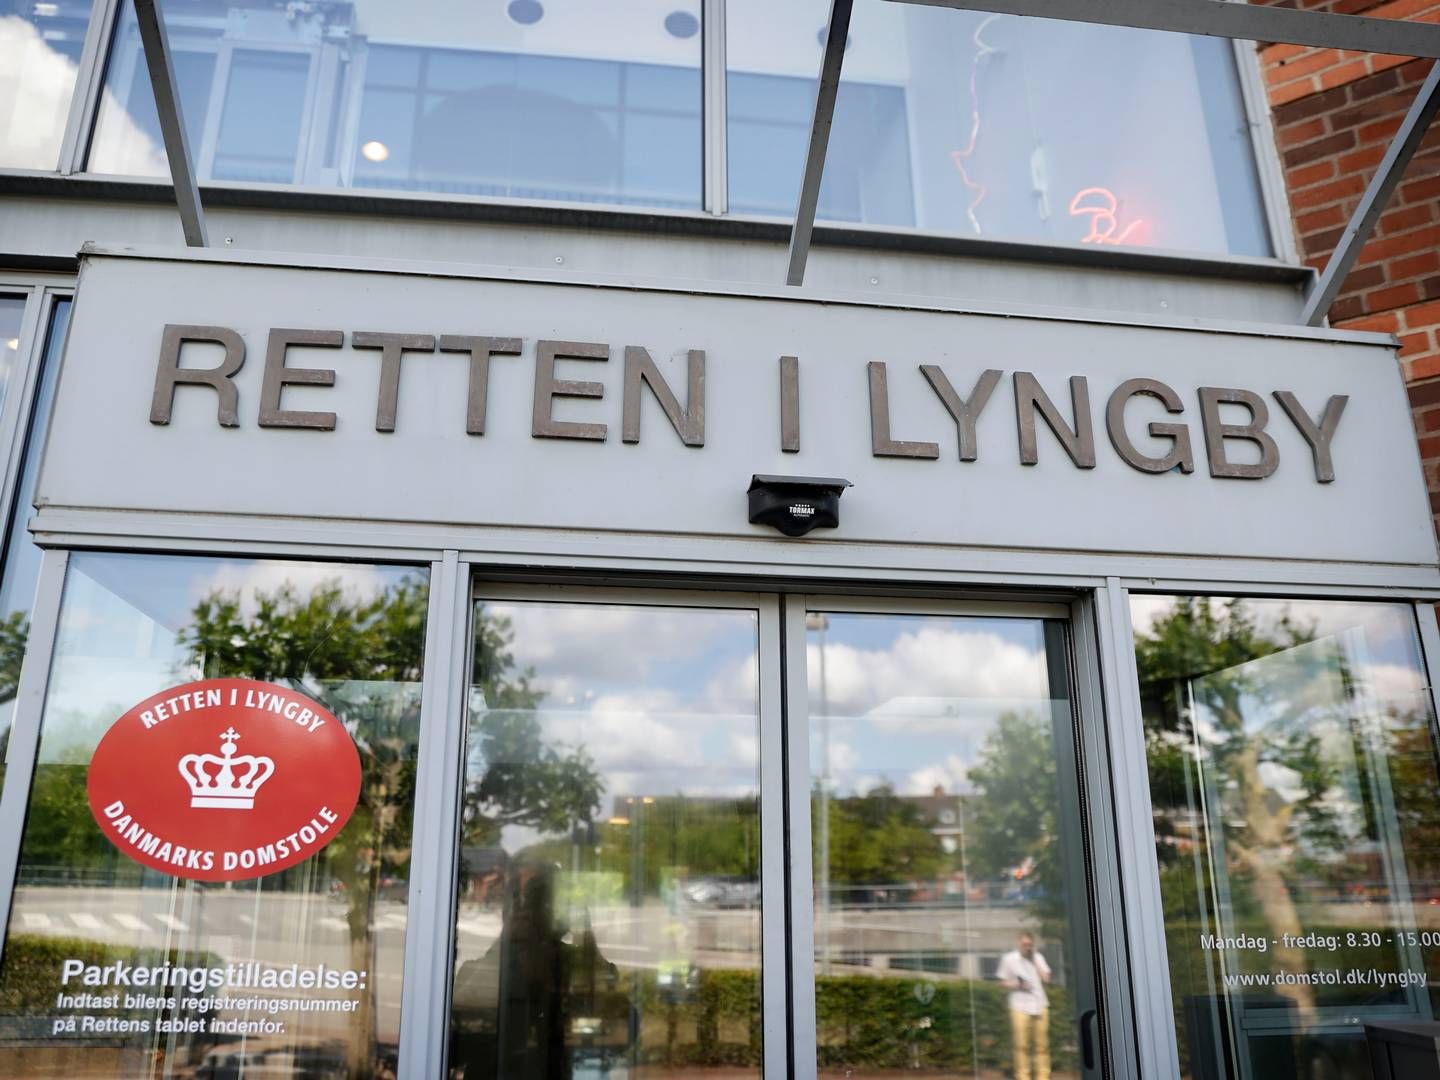 Den erfarne advokat har bedt om navneforbud under straffesagen, hvilket skal afgøres ved Retten i Lyngby i næste måned, skriver Ekstra Bladet. | Foto: Jens Dresling